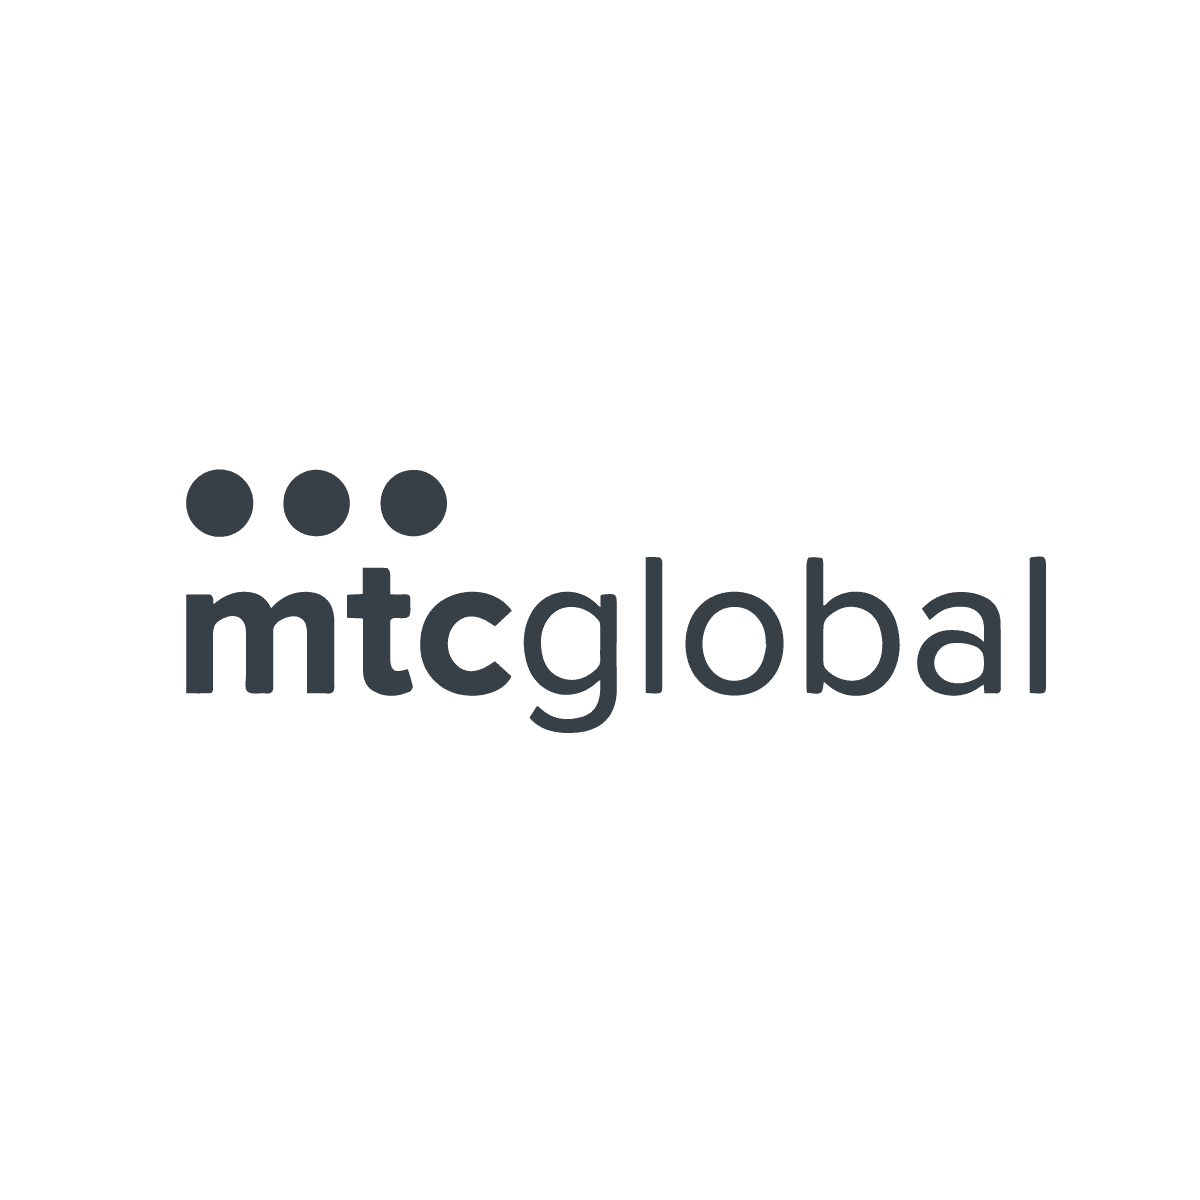 MTC Global logo